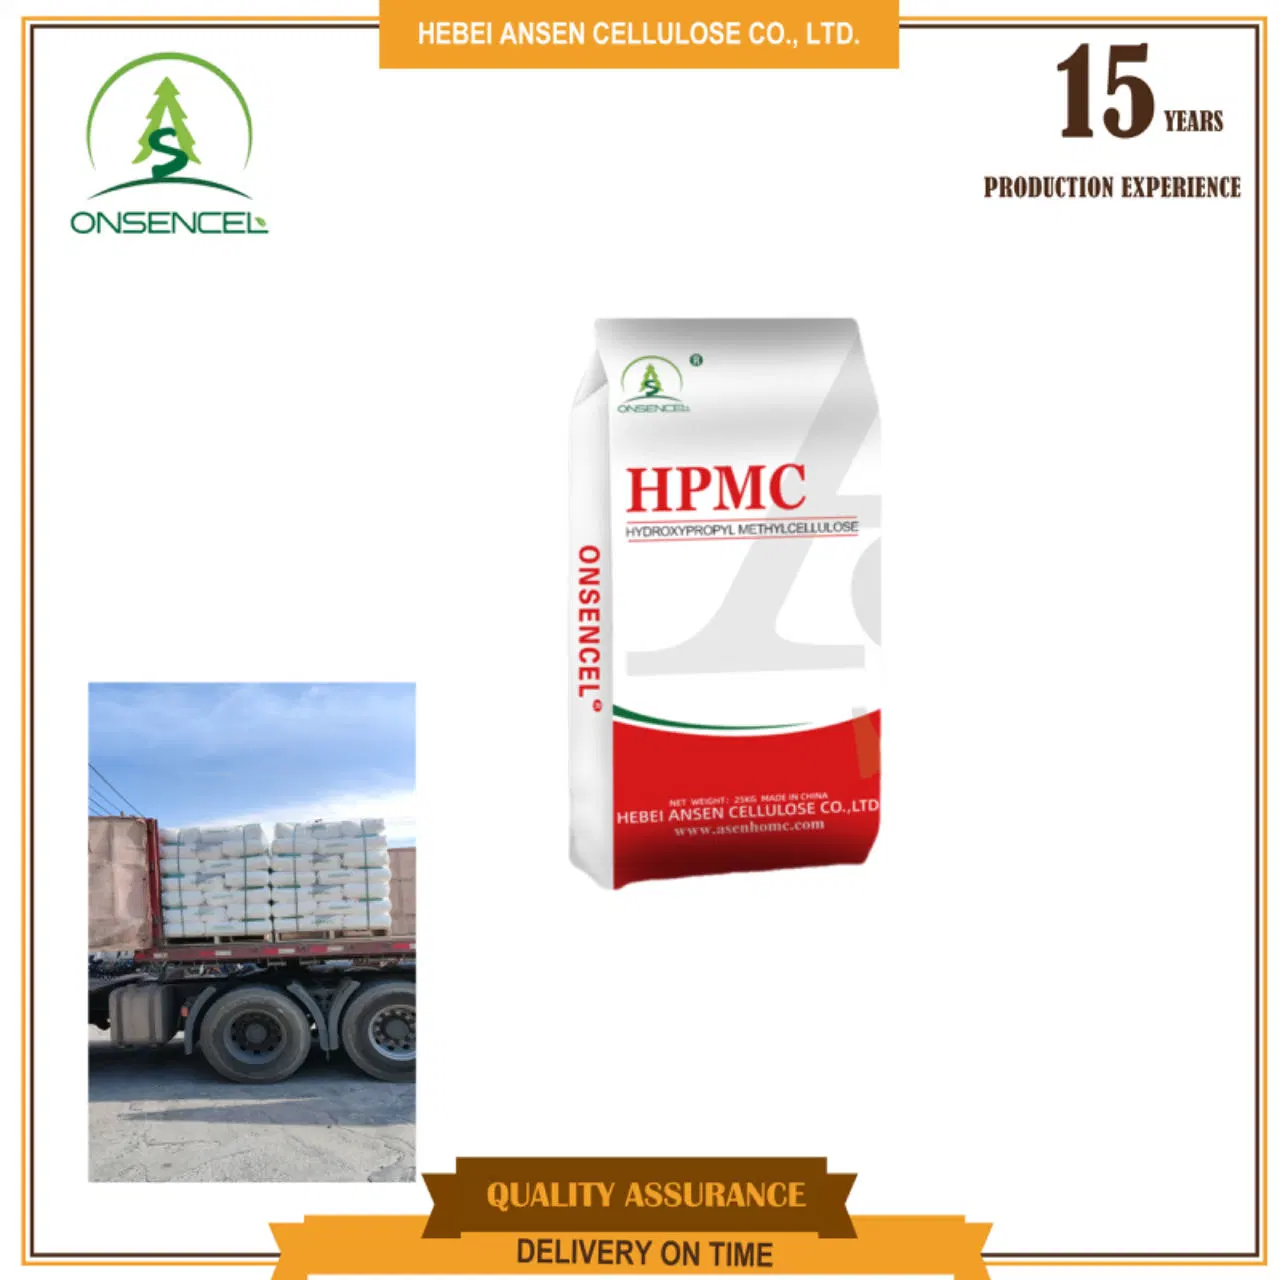 Coton cellulose HPMC 200000 100000 CPS Price produits chimiques matières premières Industriel